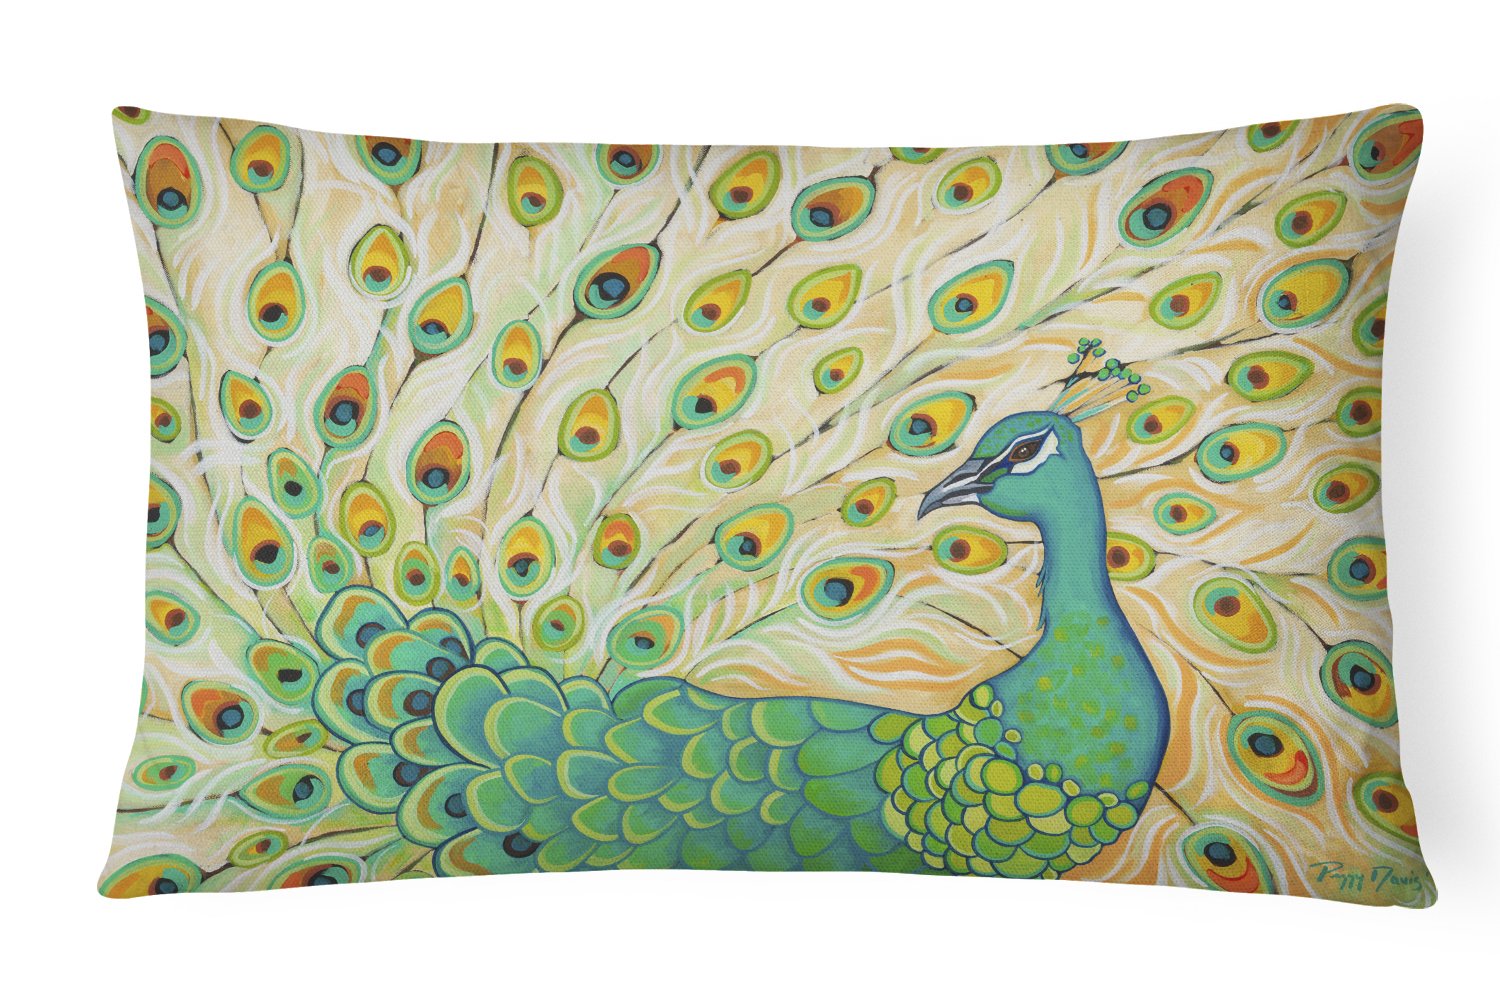 Pretty Pretty Peacock Canvas Fabric Decorative Pillow PPD3021PW1216 by Caroline's Treasures